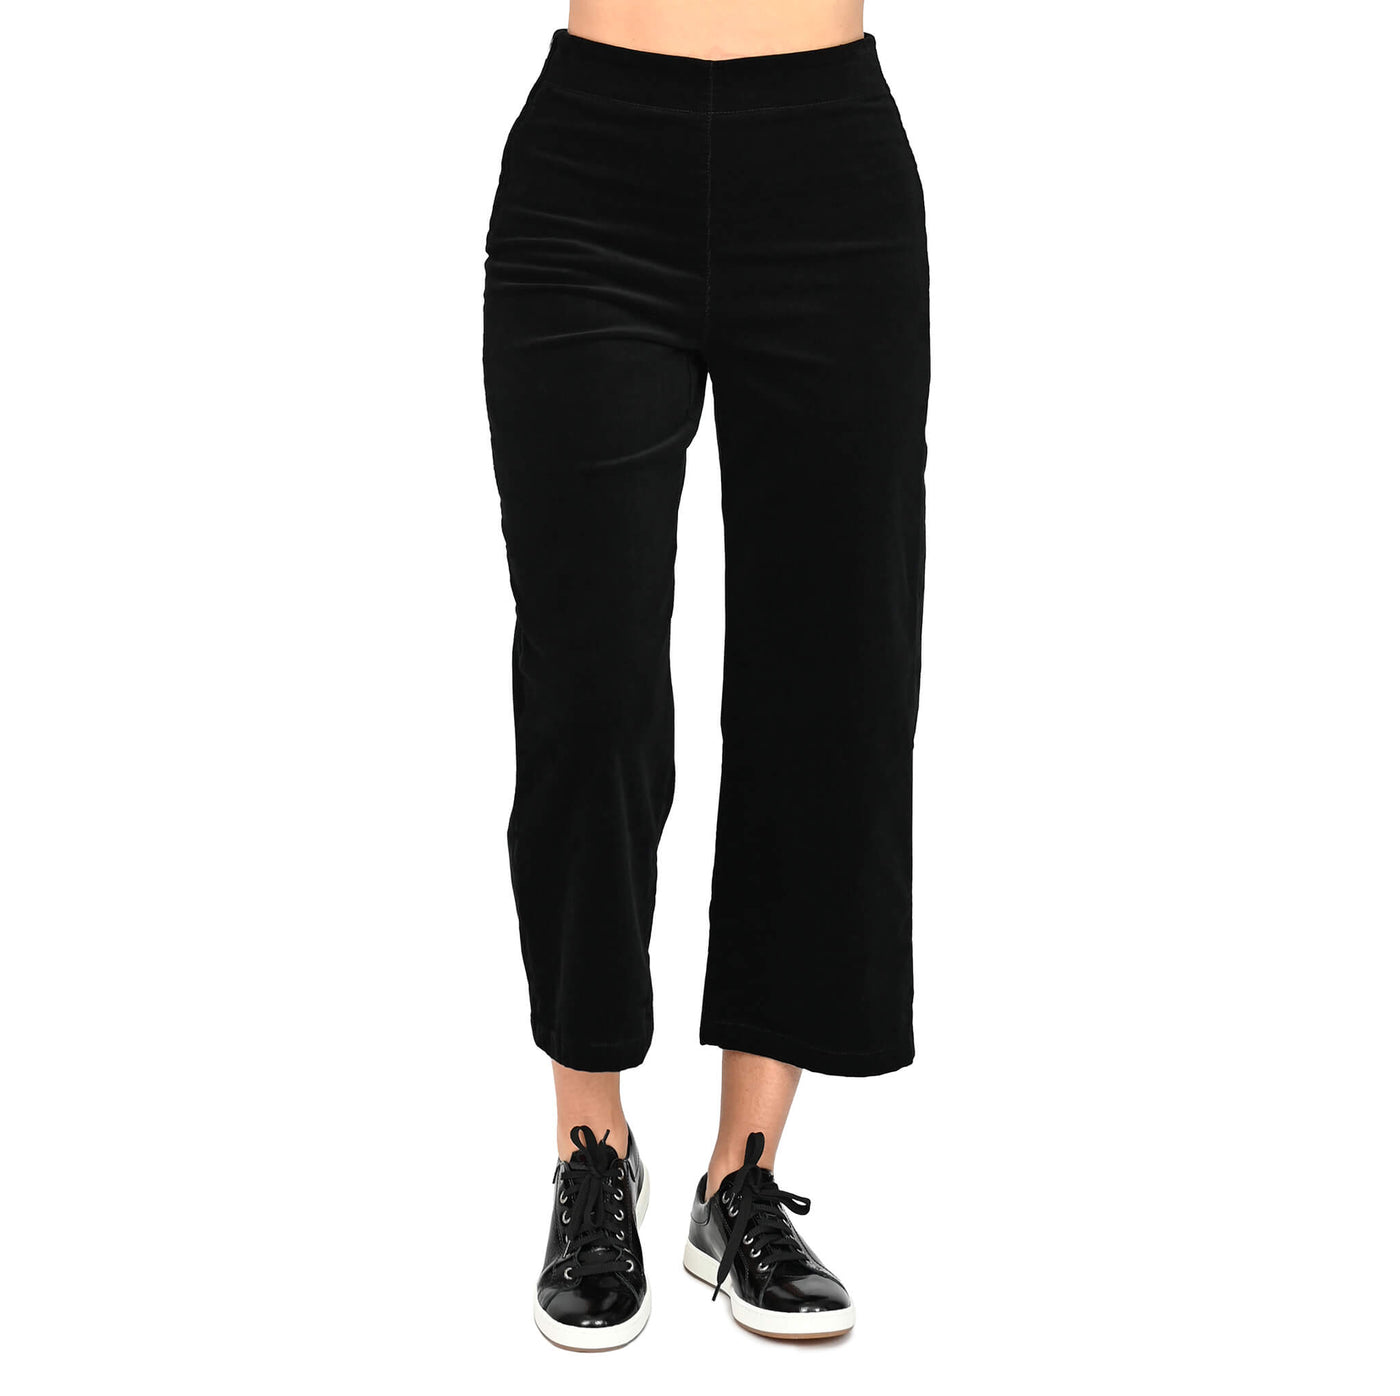 Lily Yoga Jeans noir: une création Québécoise signée KSL